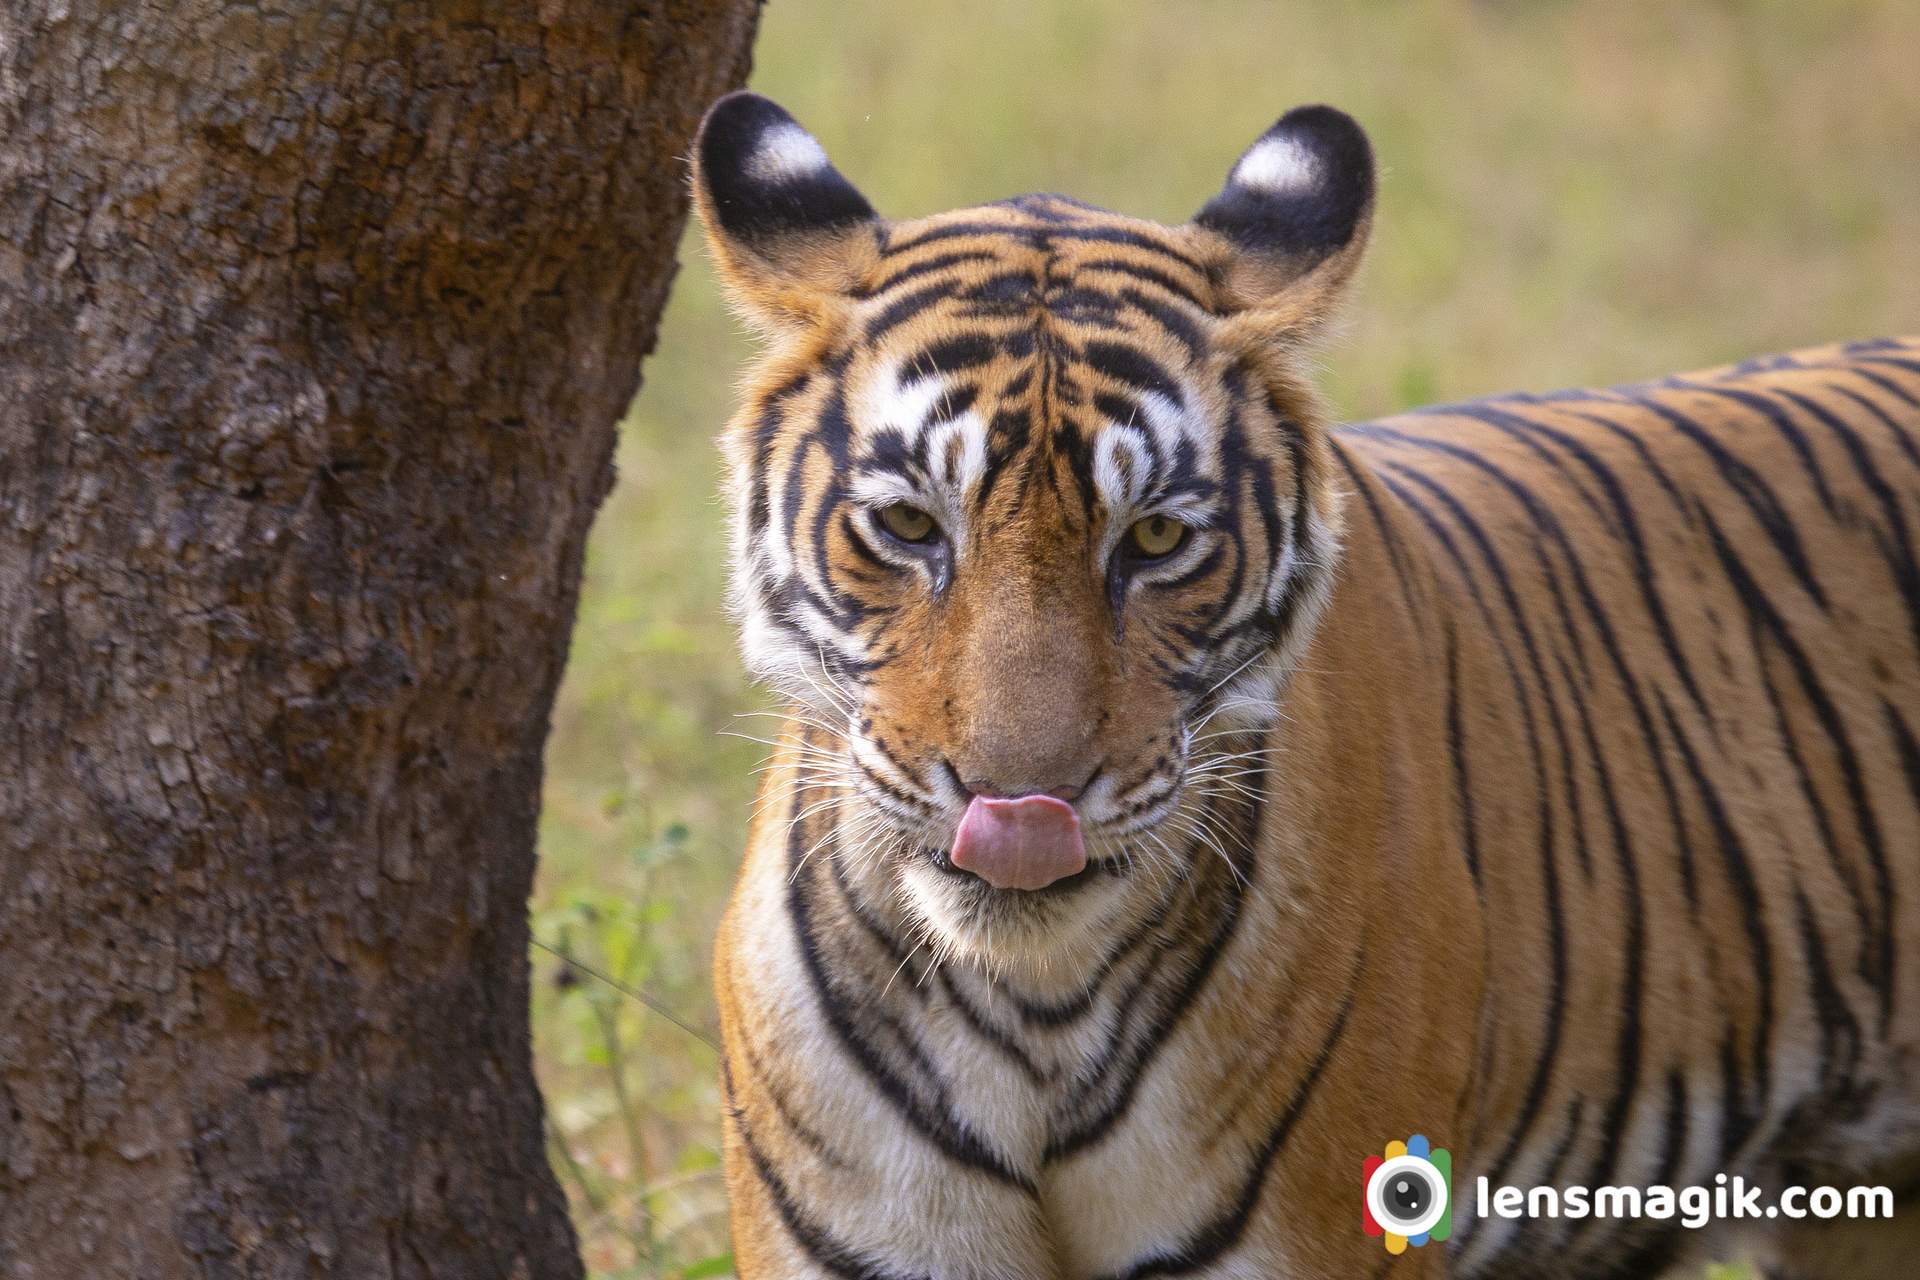 Tigress Of Ranthambore National Park